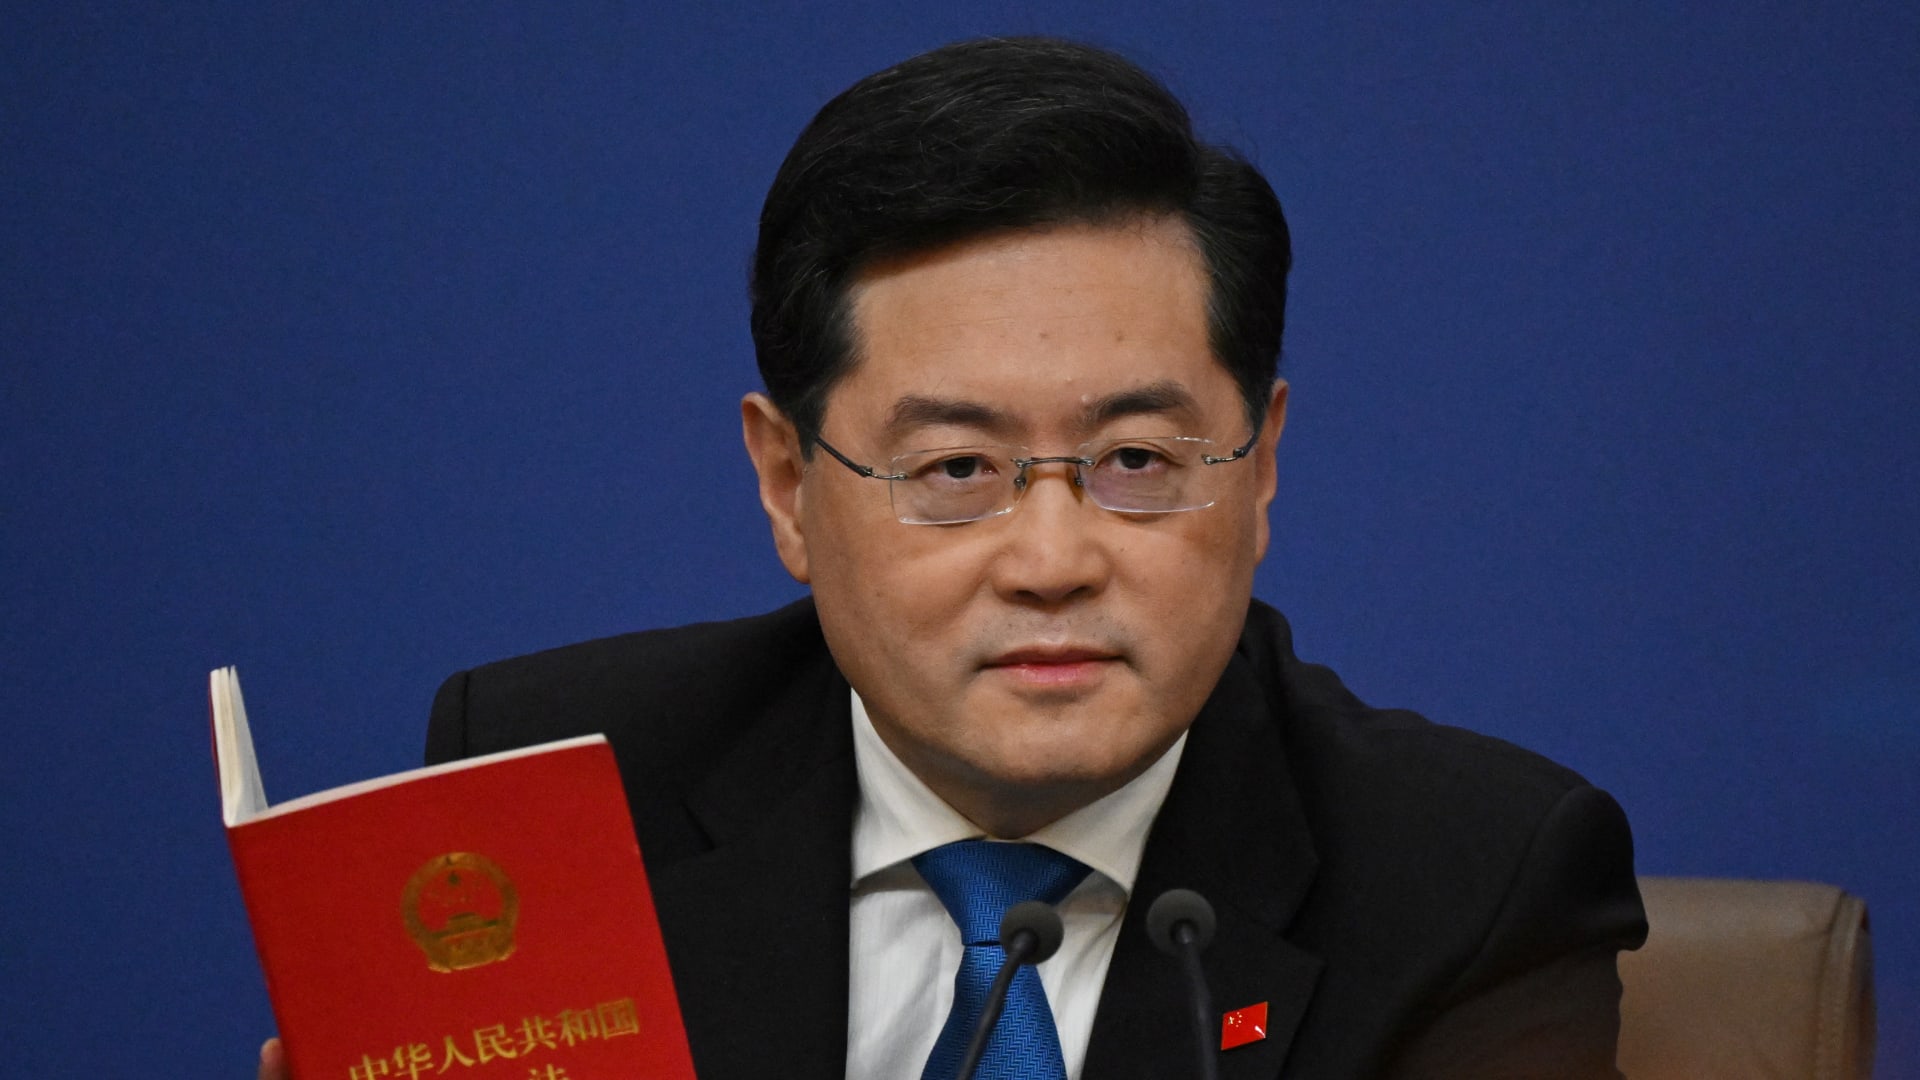 وزير خارجية الصين يوجه تحذيرا حول إنشاء "ناتو" في آسيا وينفي تقديم أسلحة لروسيا